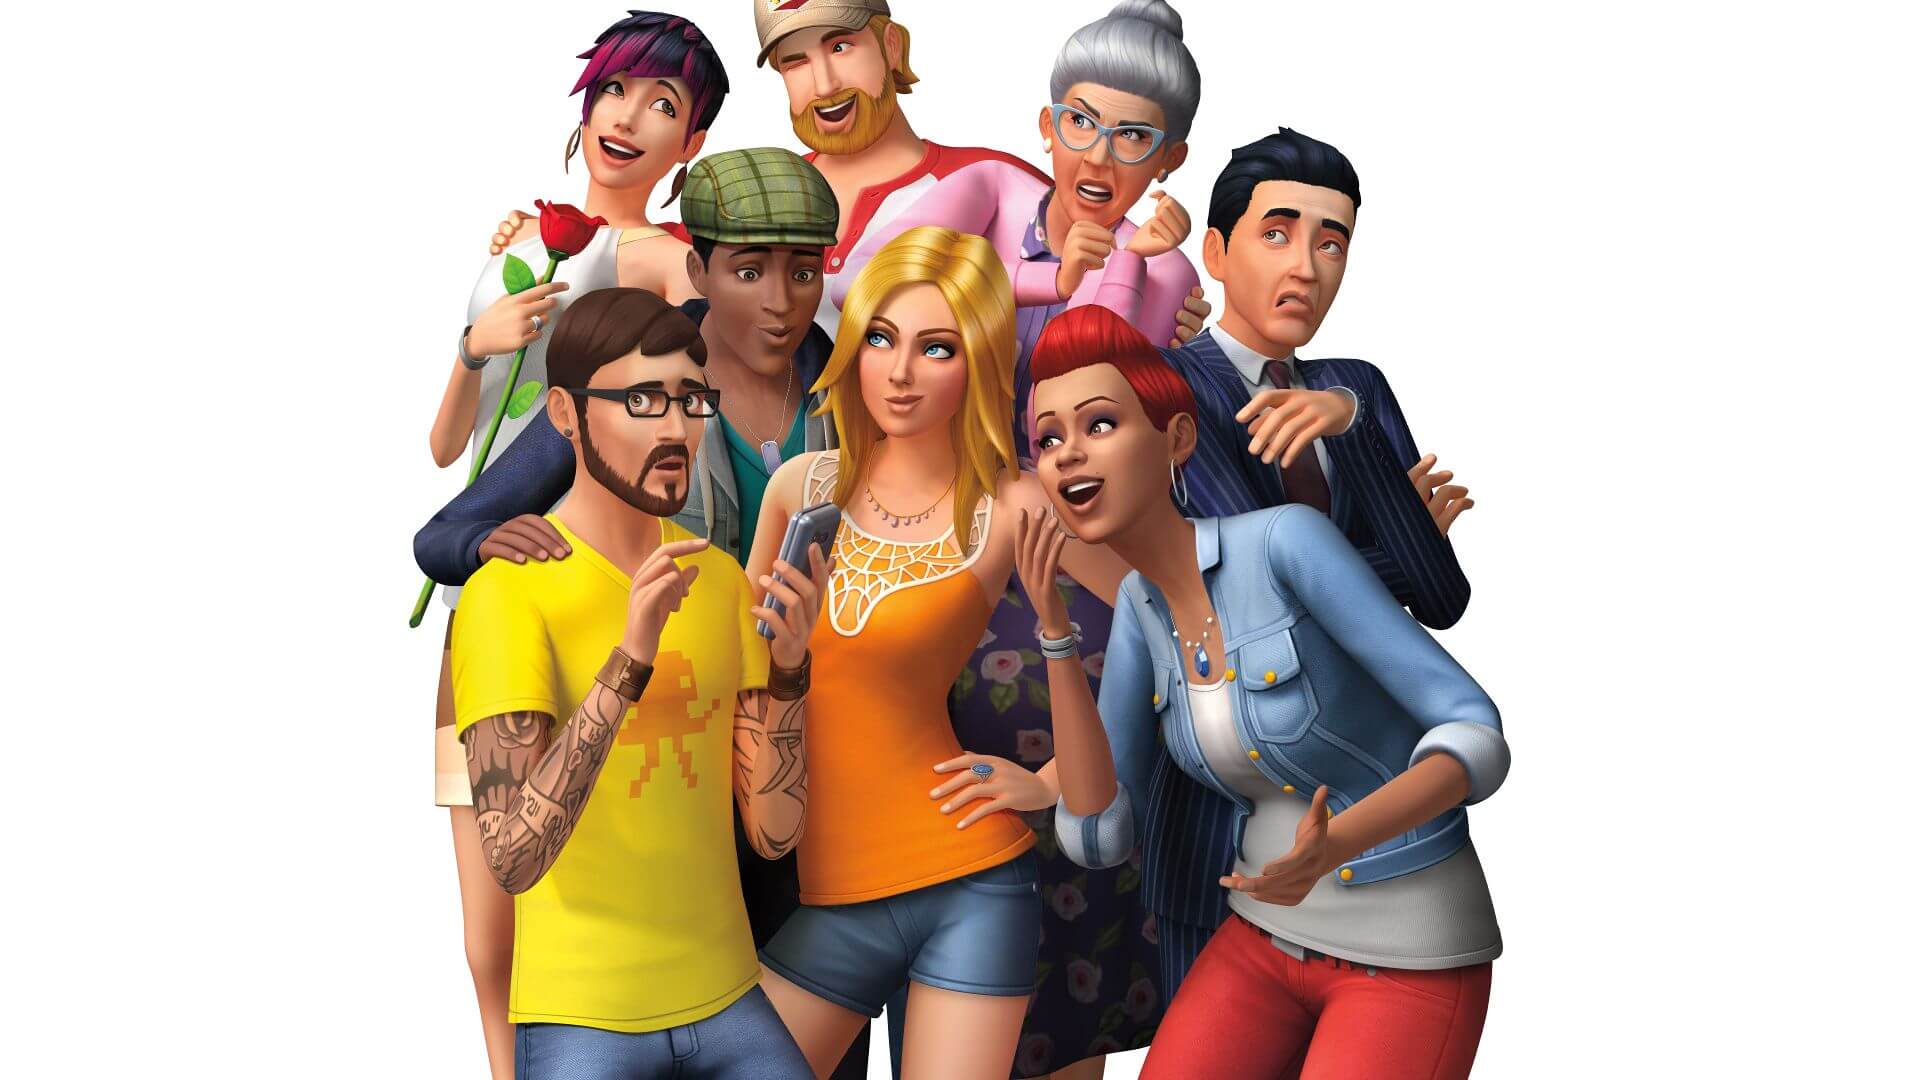 EA corta de raíz los rumores de Los Sims 4 en Nintendo Switch